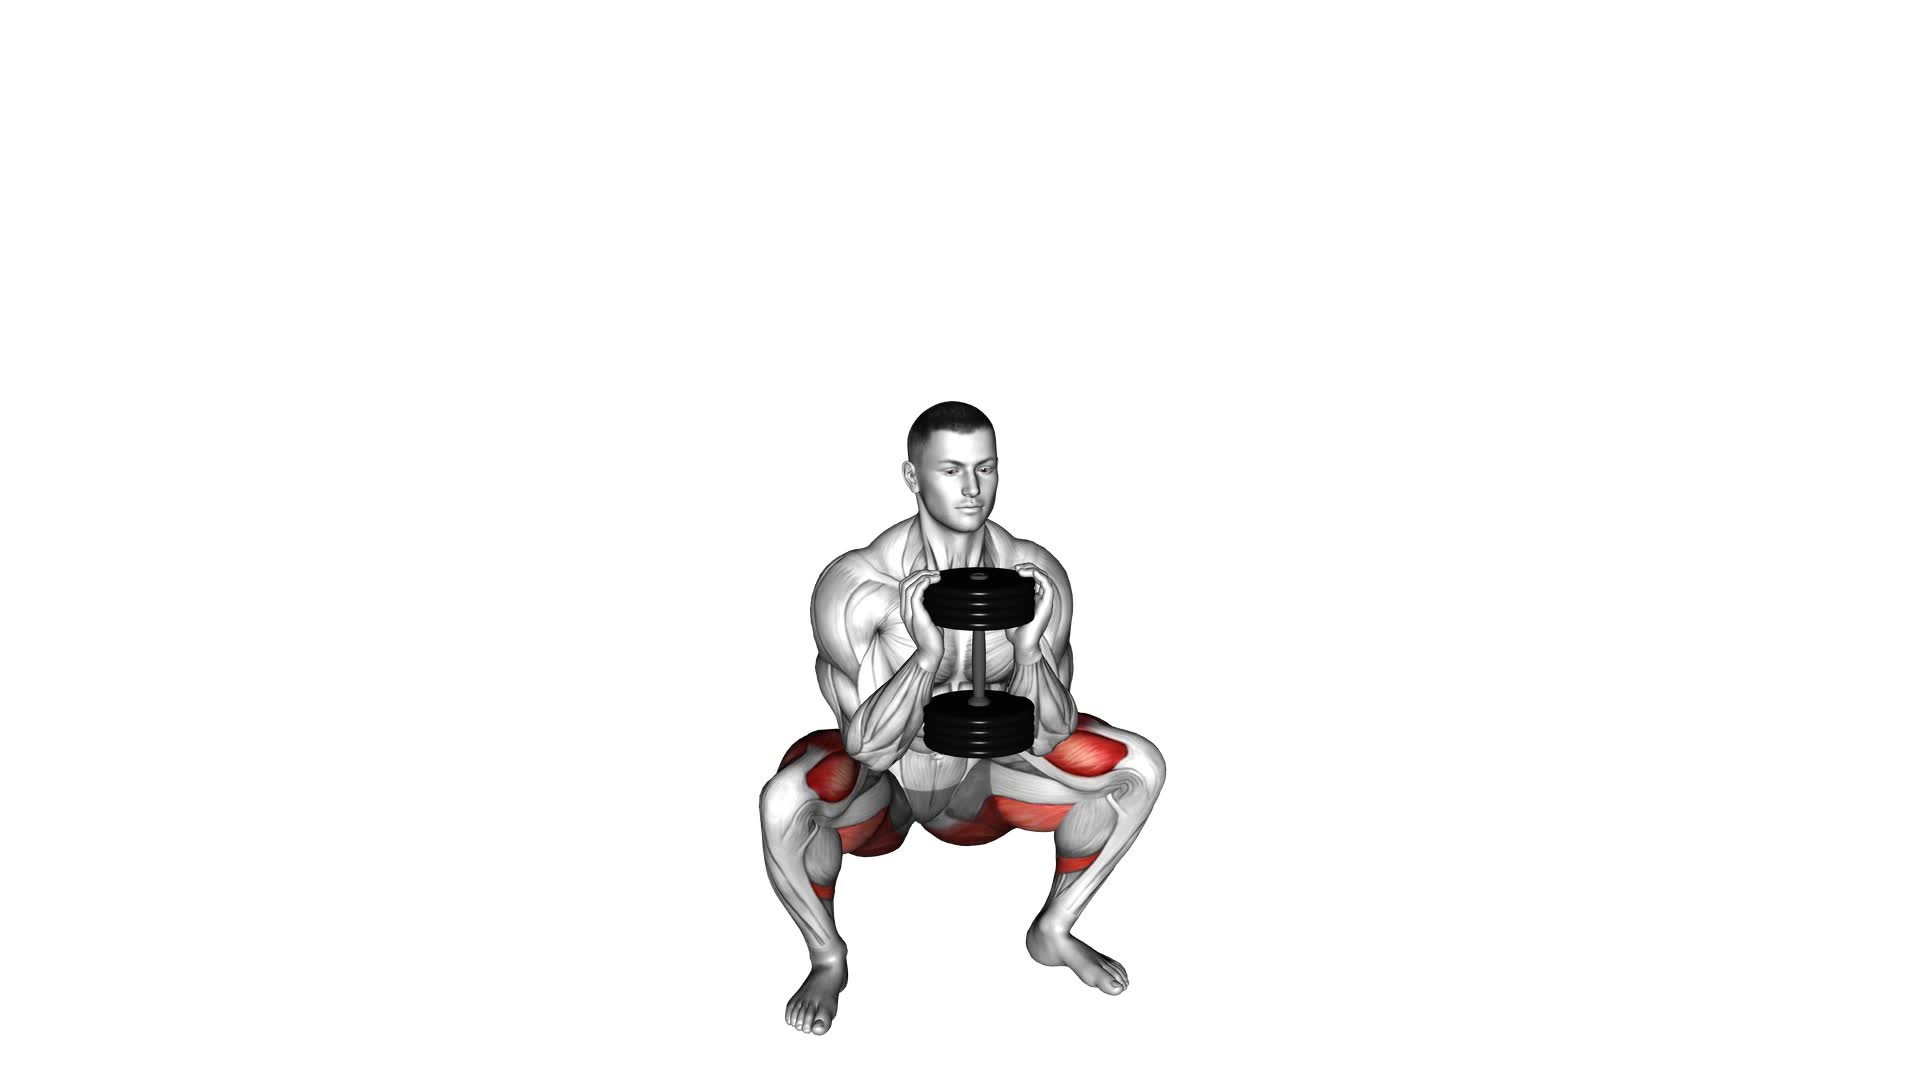 Dumbbell Goblet 2 Sec Hold Squat - Video Exercise Guide & Tips